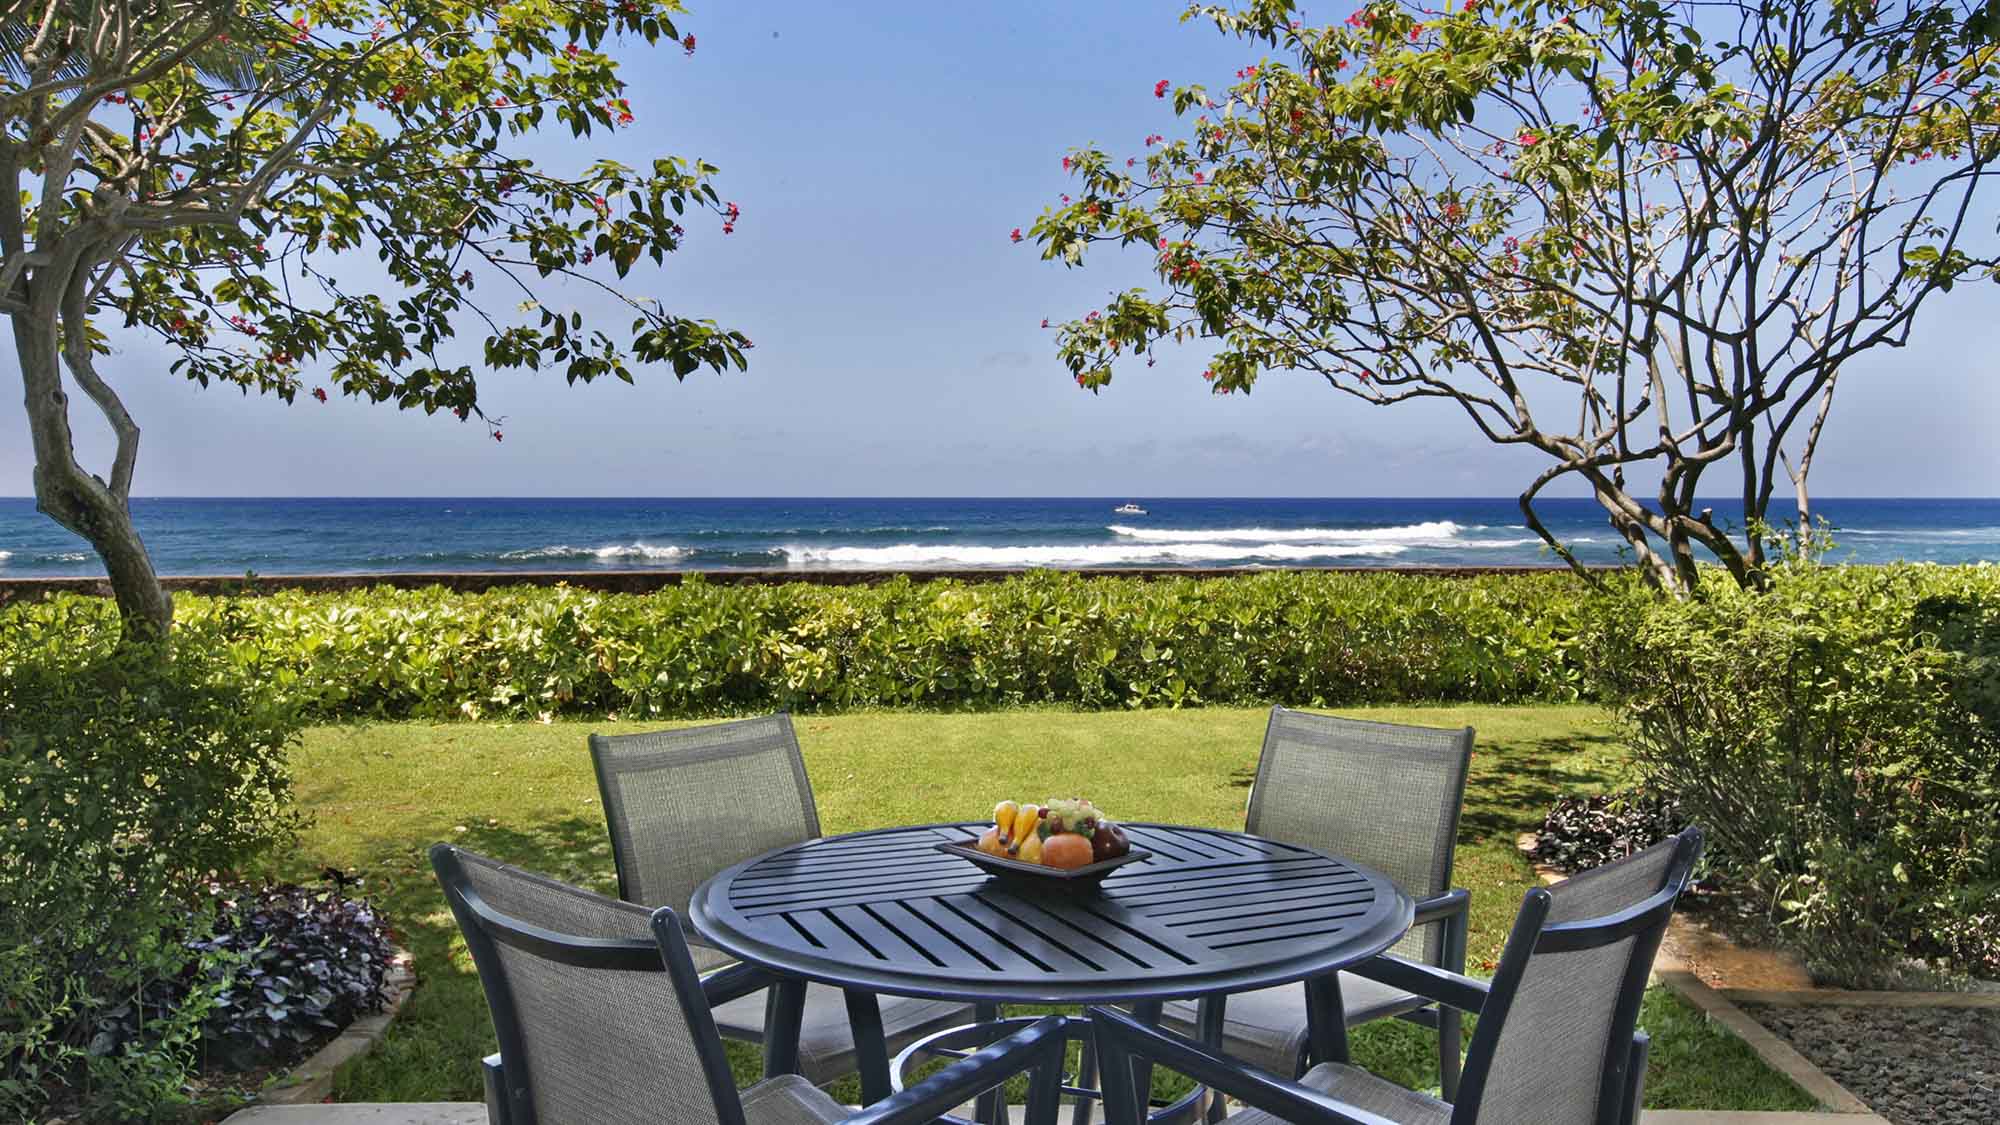 Poipu Kapili Resort #55 - Oceanfront Lanai View - Parrish Kauai